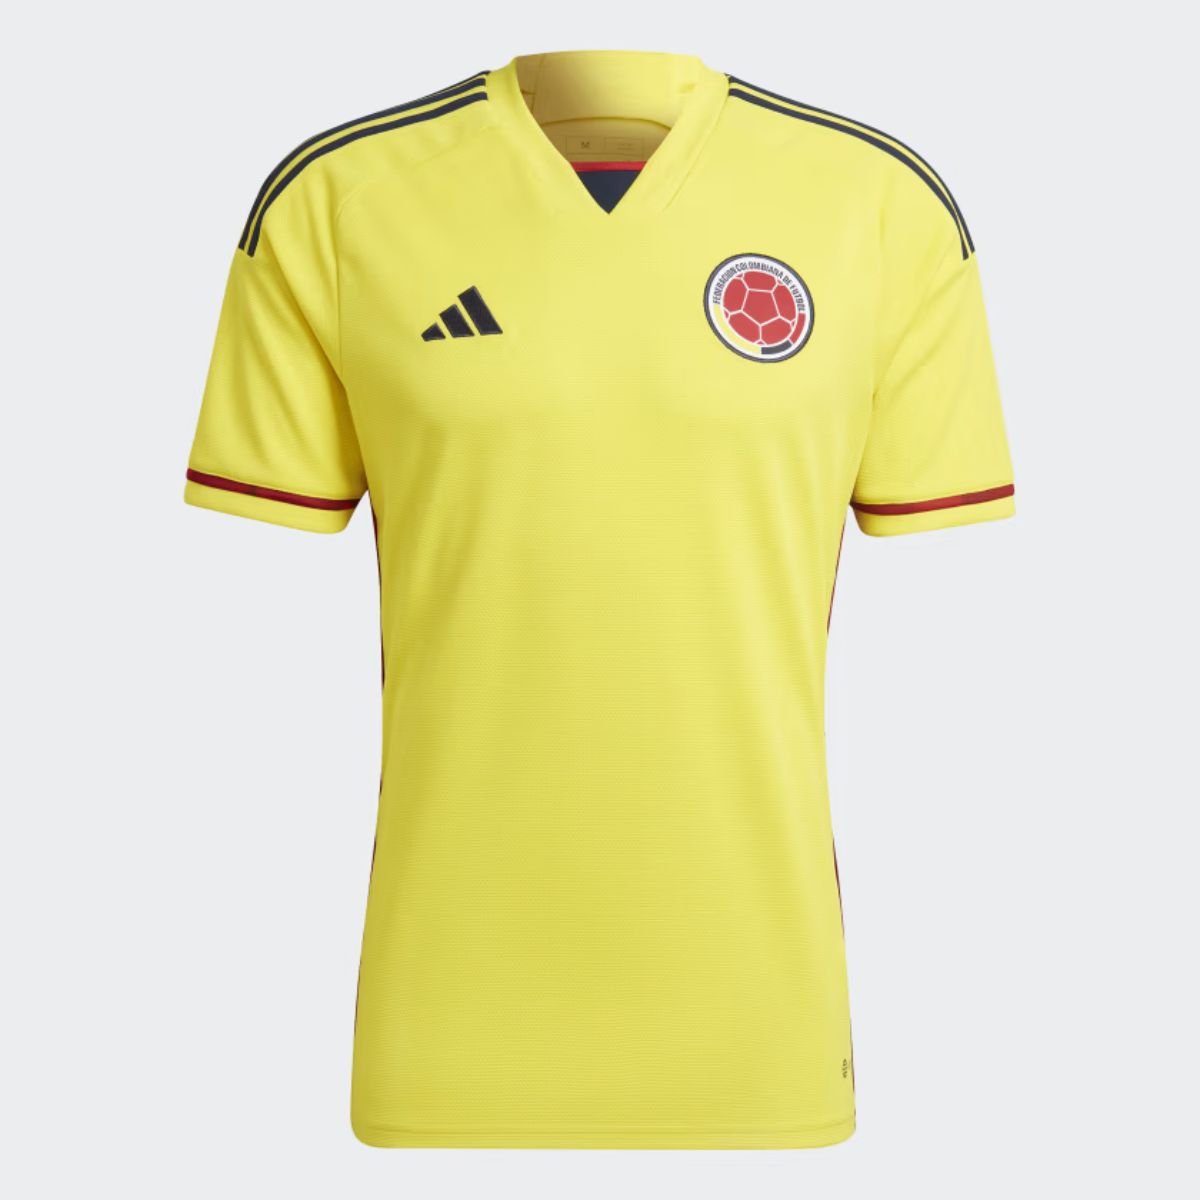 Descuentos de Adidas productos de la selección Colombia - Descuentos de Adidas: los productos de la selección Colombia que tienen hasta el 40% de rebaja